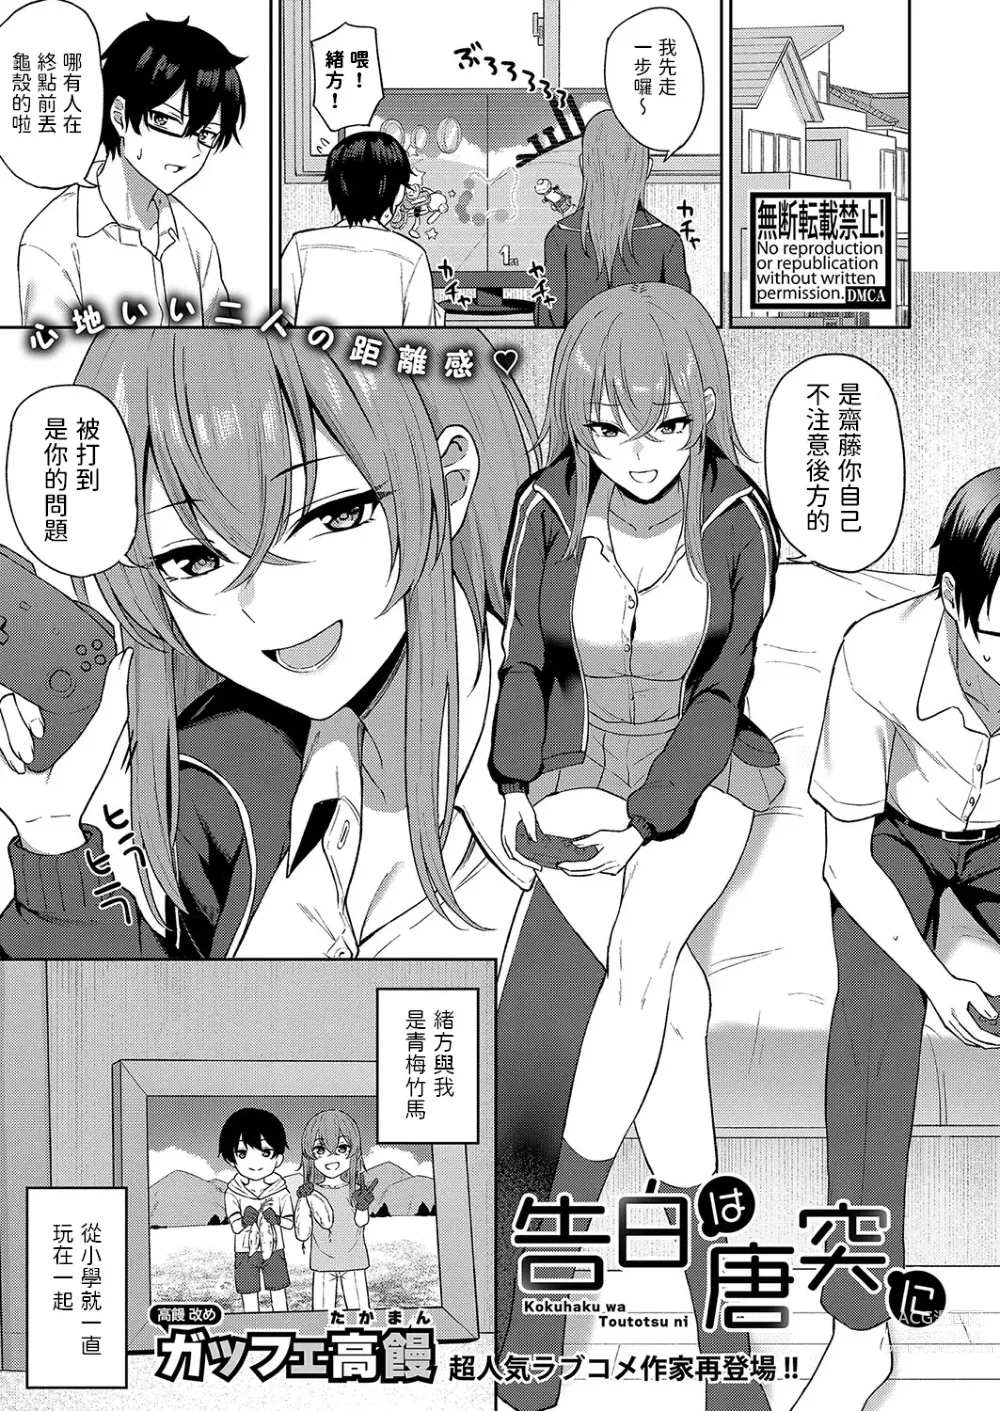 Page 1 of manga Kokuhaku wa Toutotsu ni